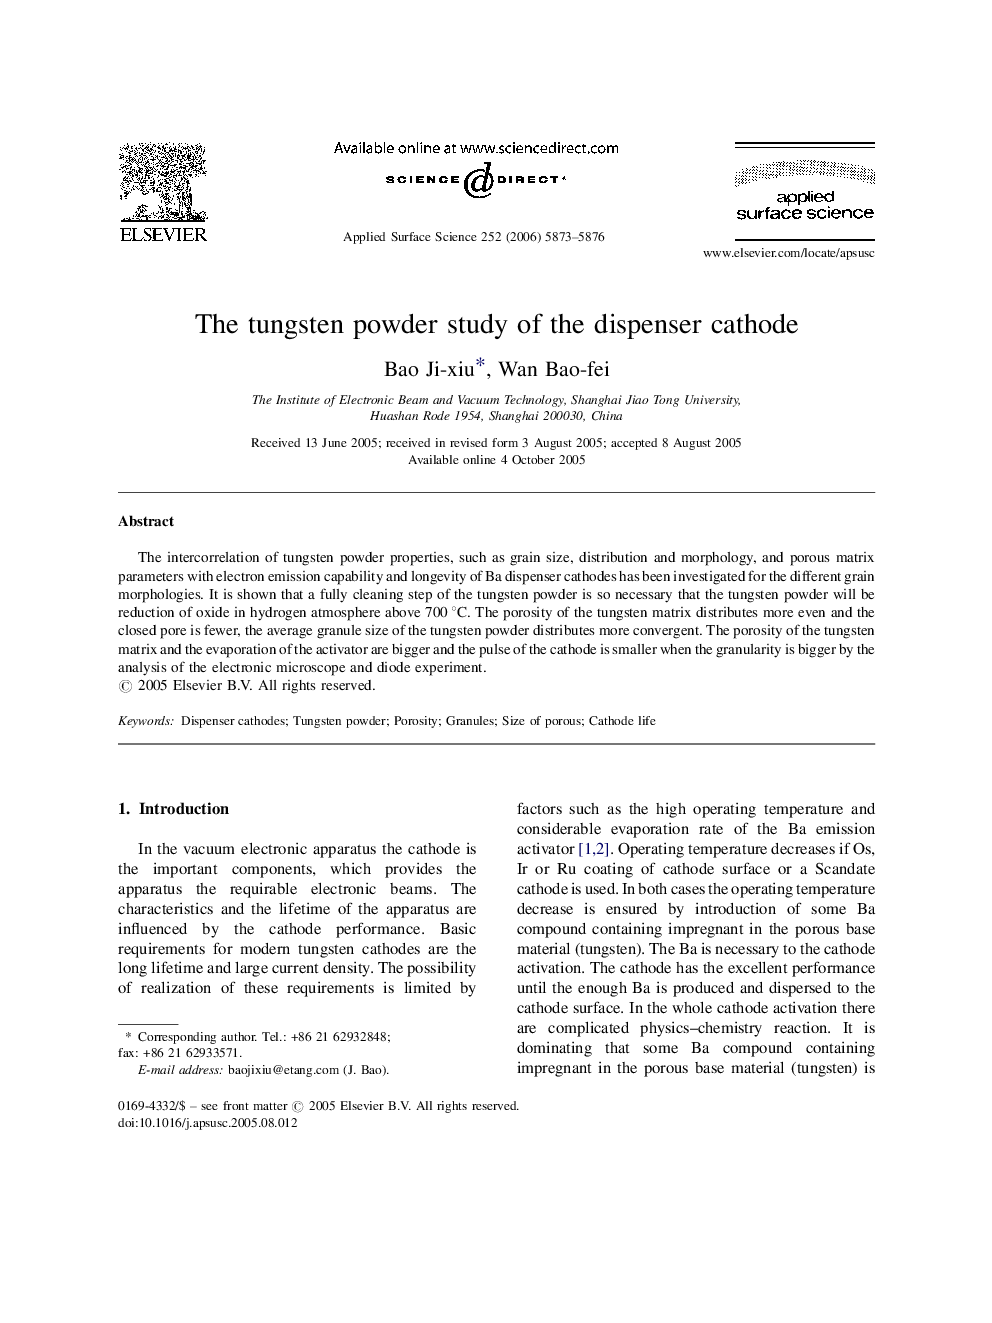 The tungsten powder study of the dispenser cathode